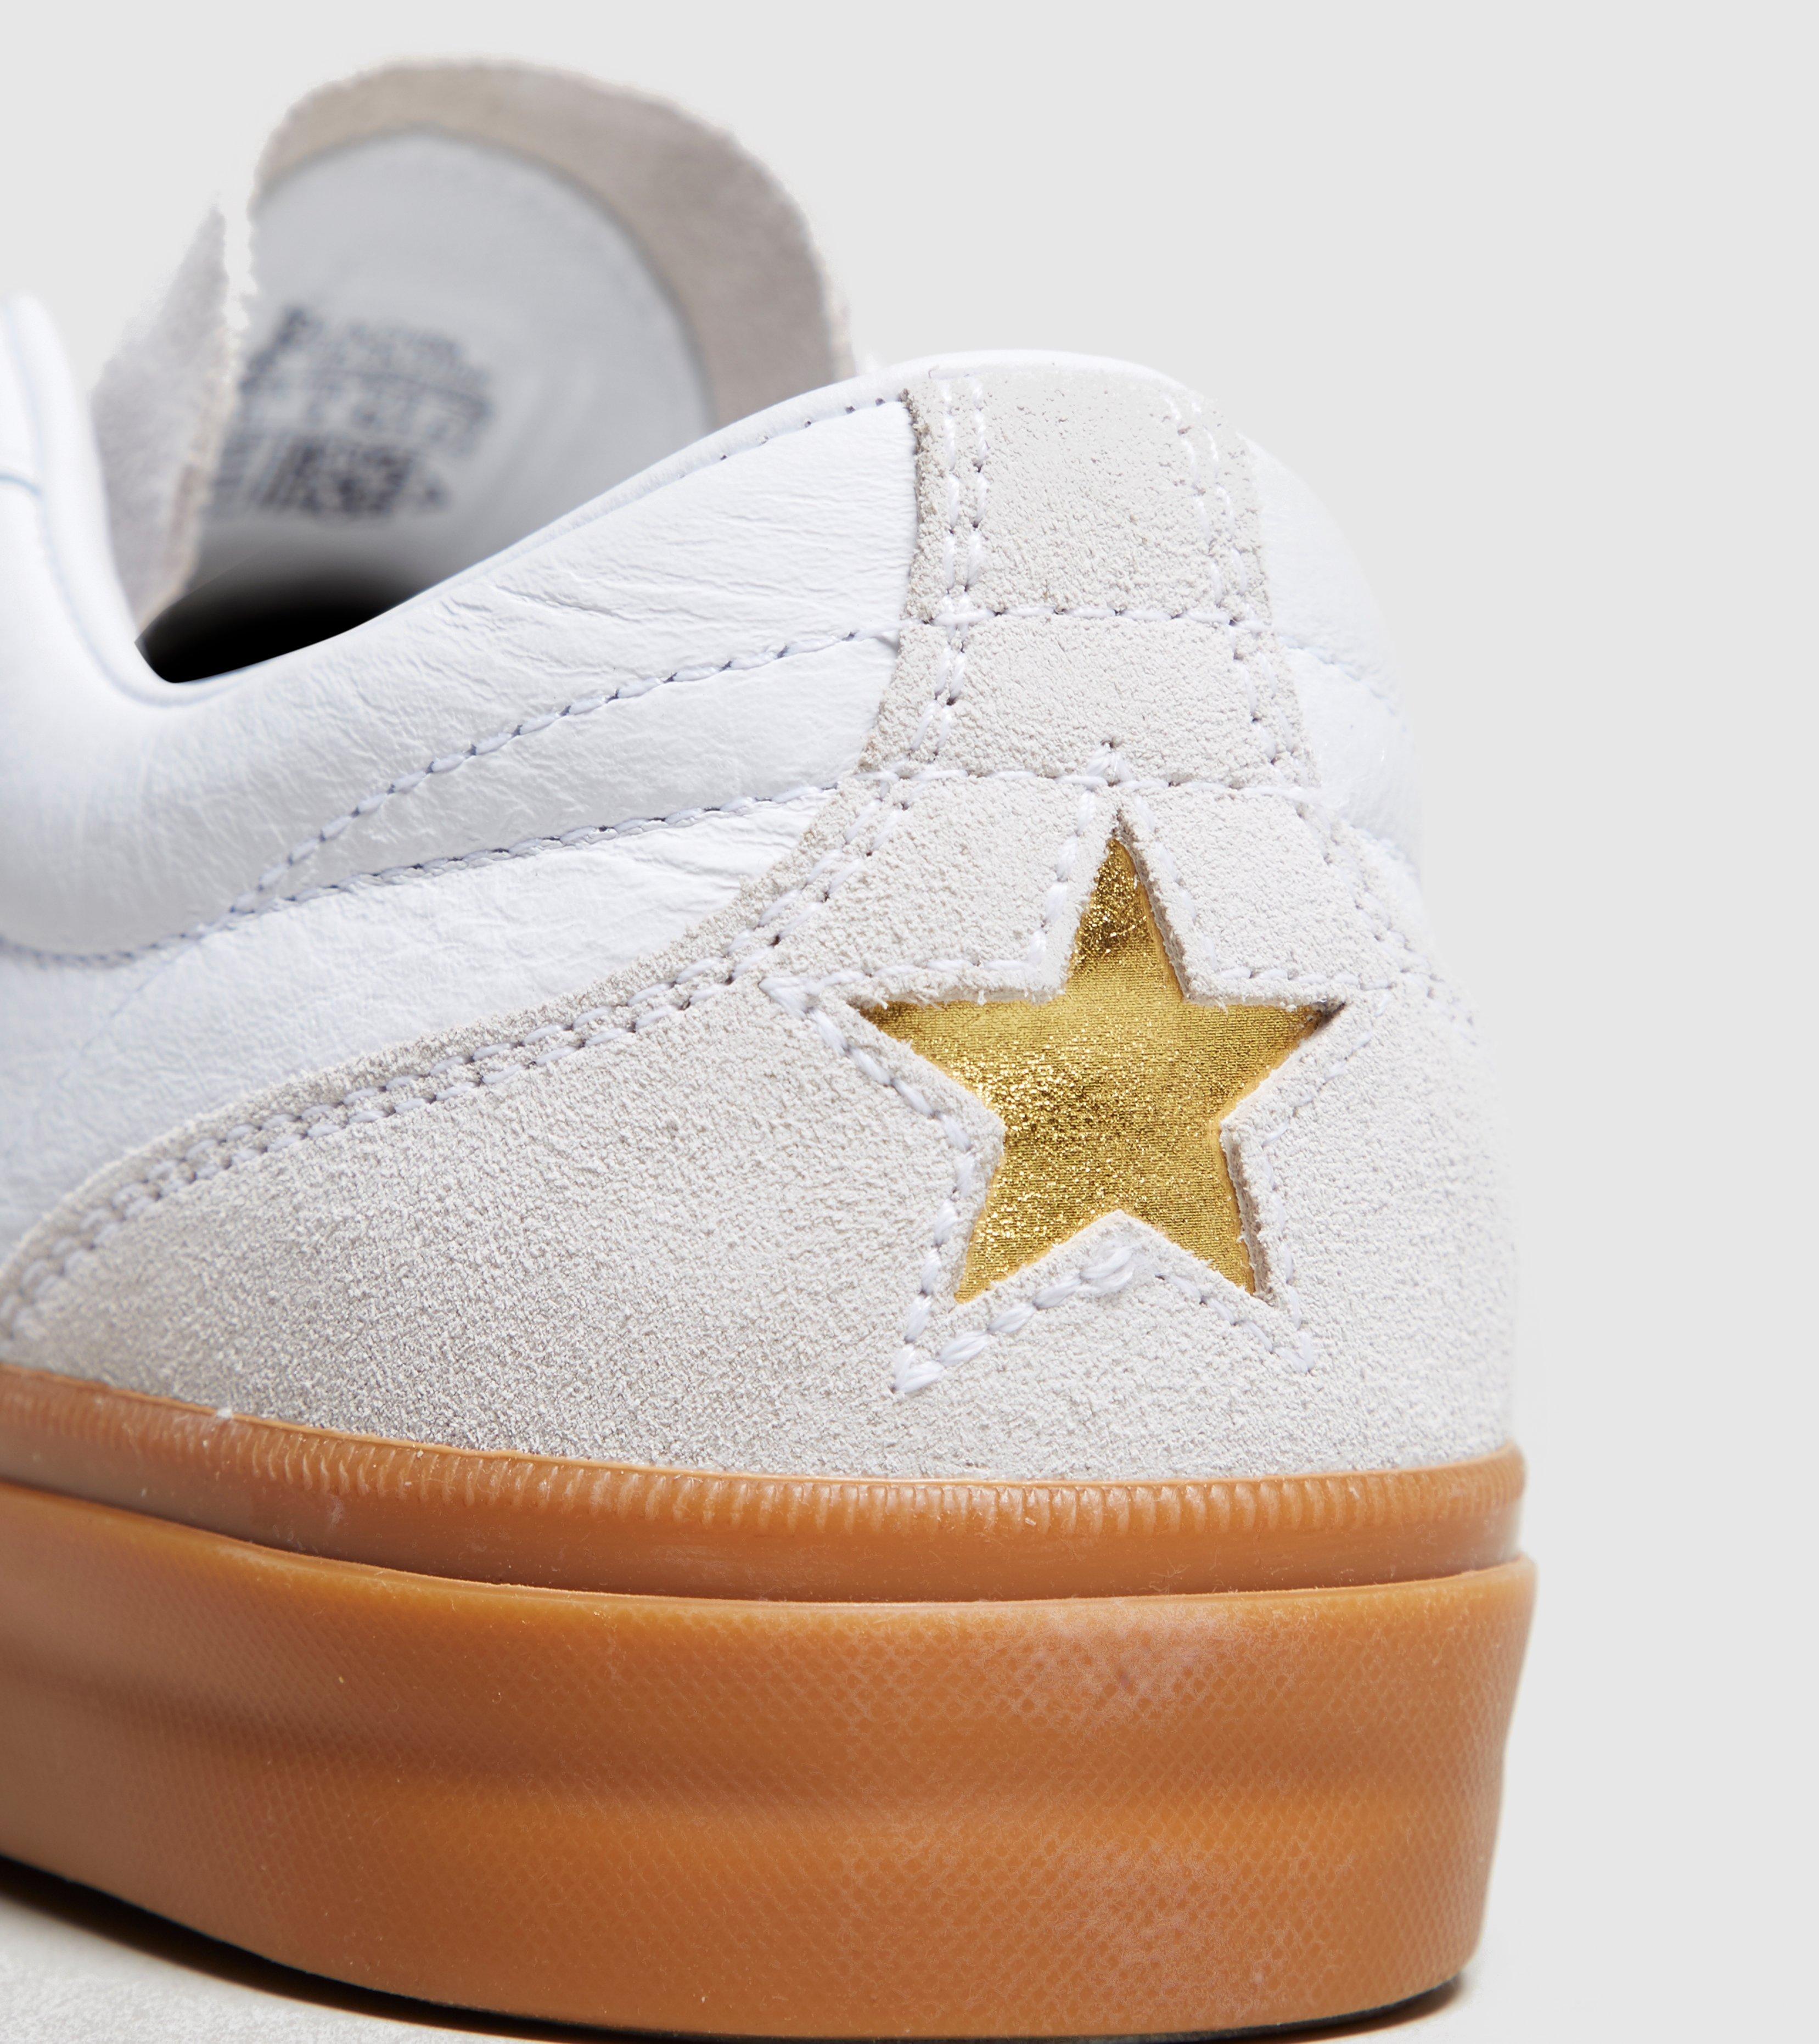 converse one star cc premium gum low top unisex shoe